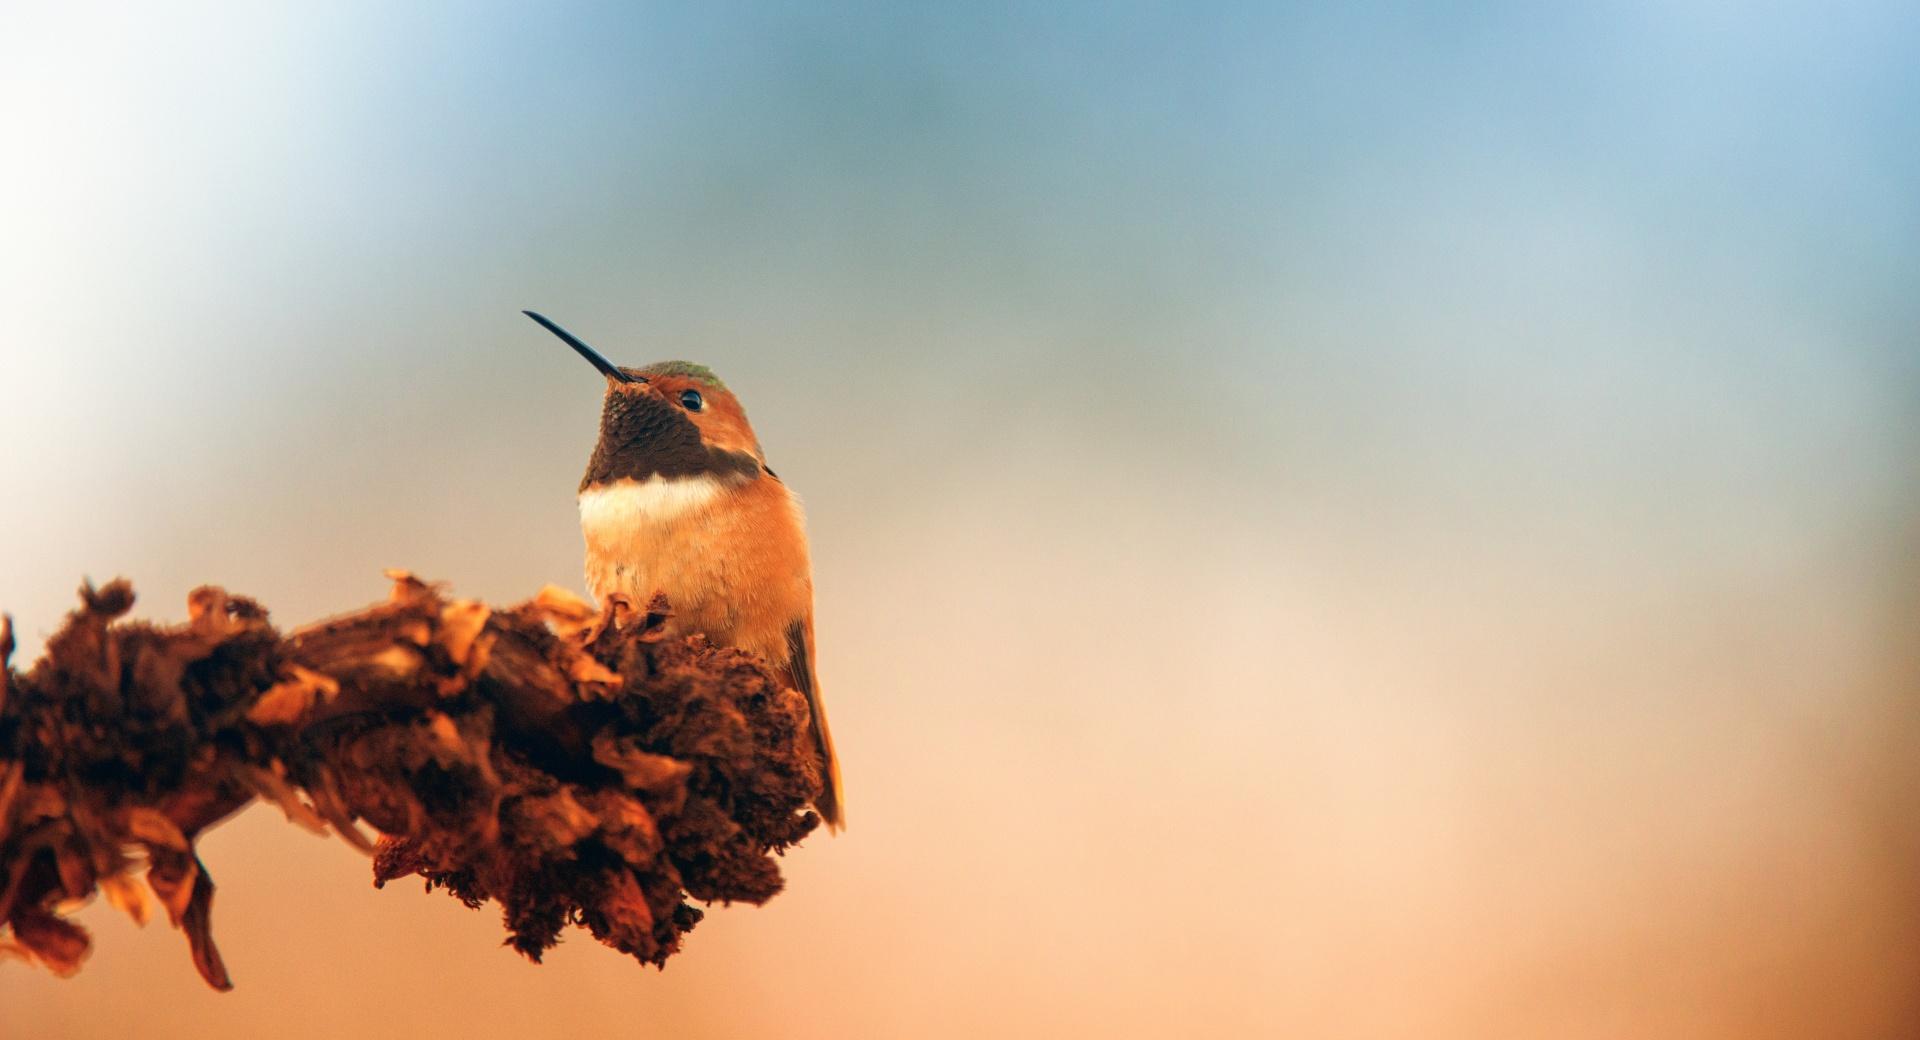 Hummingbird, Autumn at 1024 x 1024 iPad size wallpapers HD quality